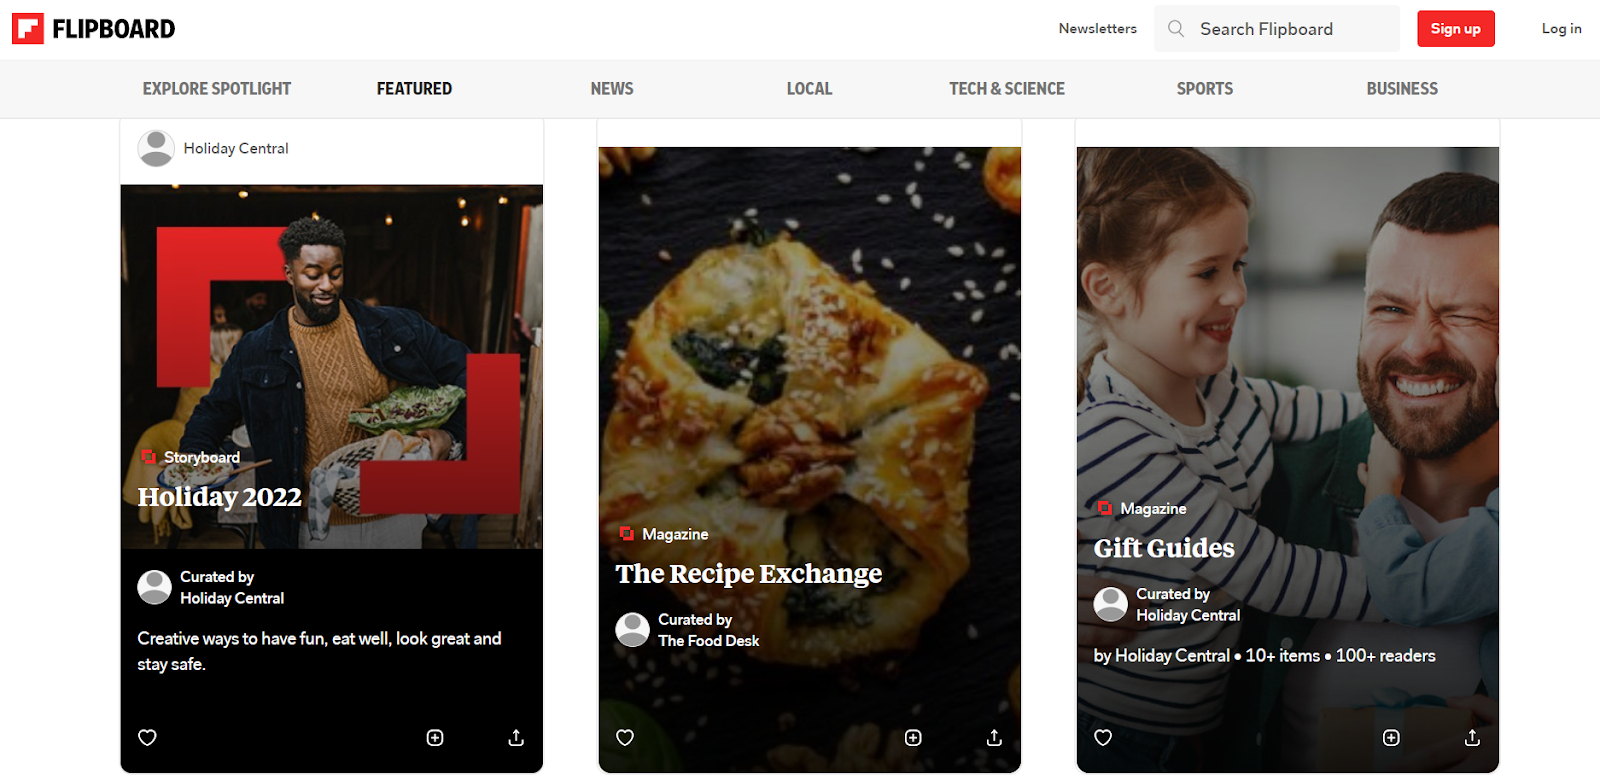 Flipboard cho phép bạn tự tạo bộ nội dung tin tức cho riêng mình